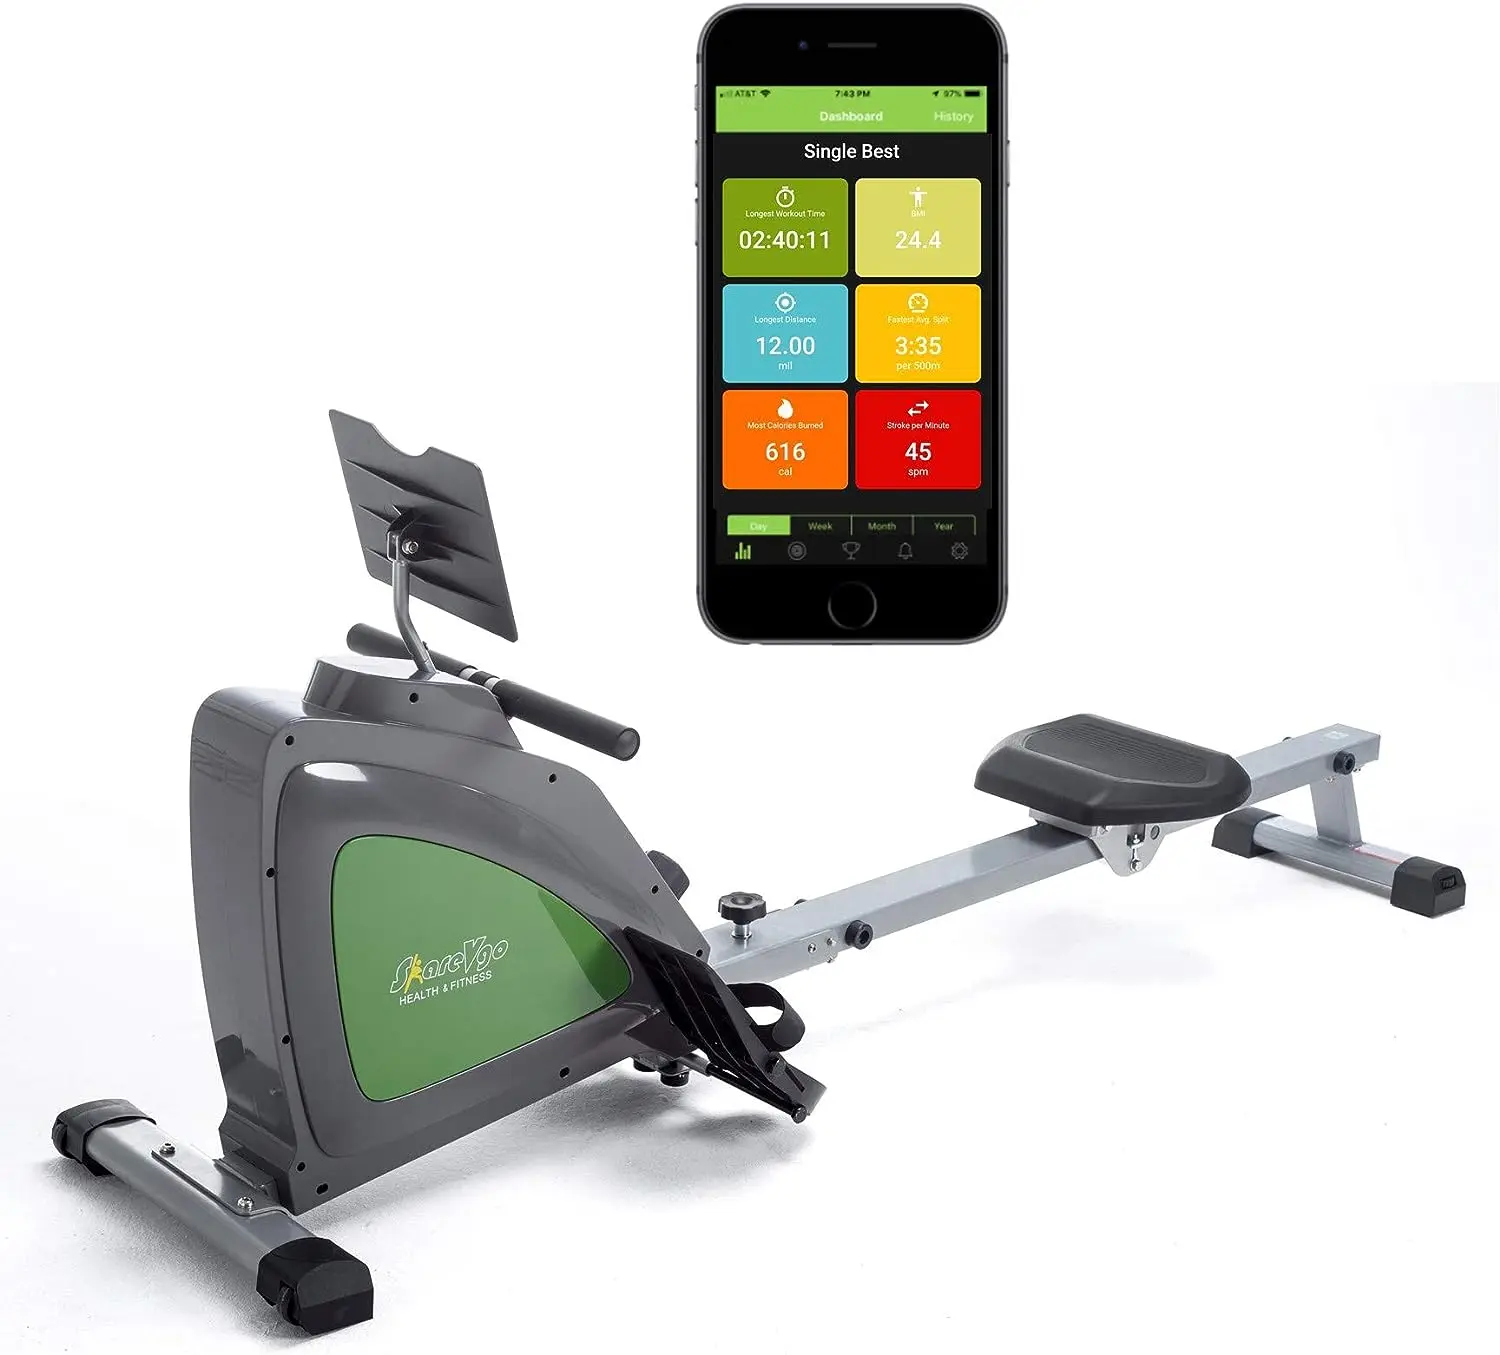 

Складной гребной тренажер Rower с бесплатным приложением для тренировок в помещении, с ЖК-монитором и Bluetooth